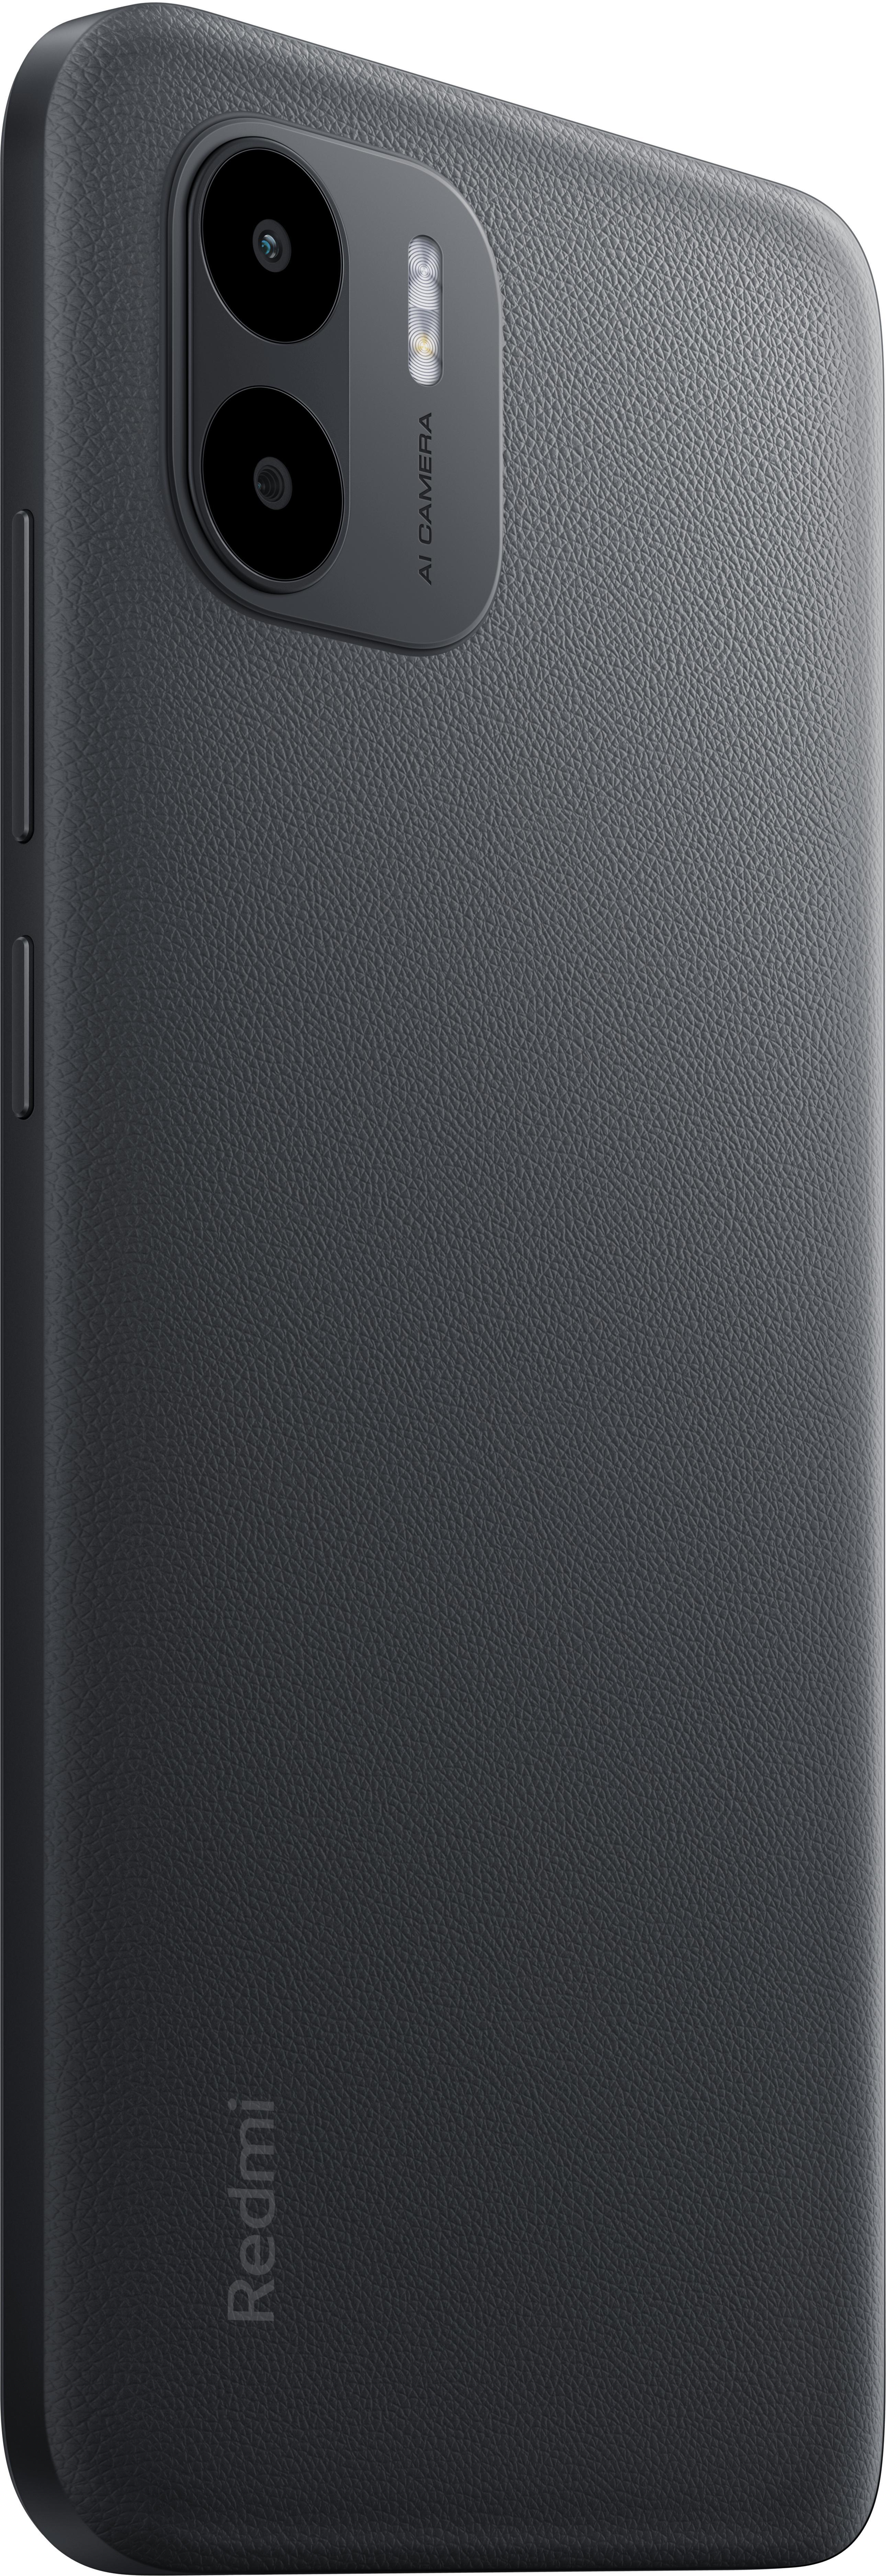 Xiaomi - Smartphone Xiaomi Redmi A2 6.52" 3GB/64GB Dual SIM Black